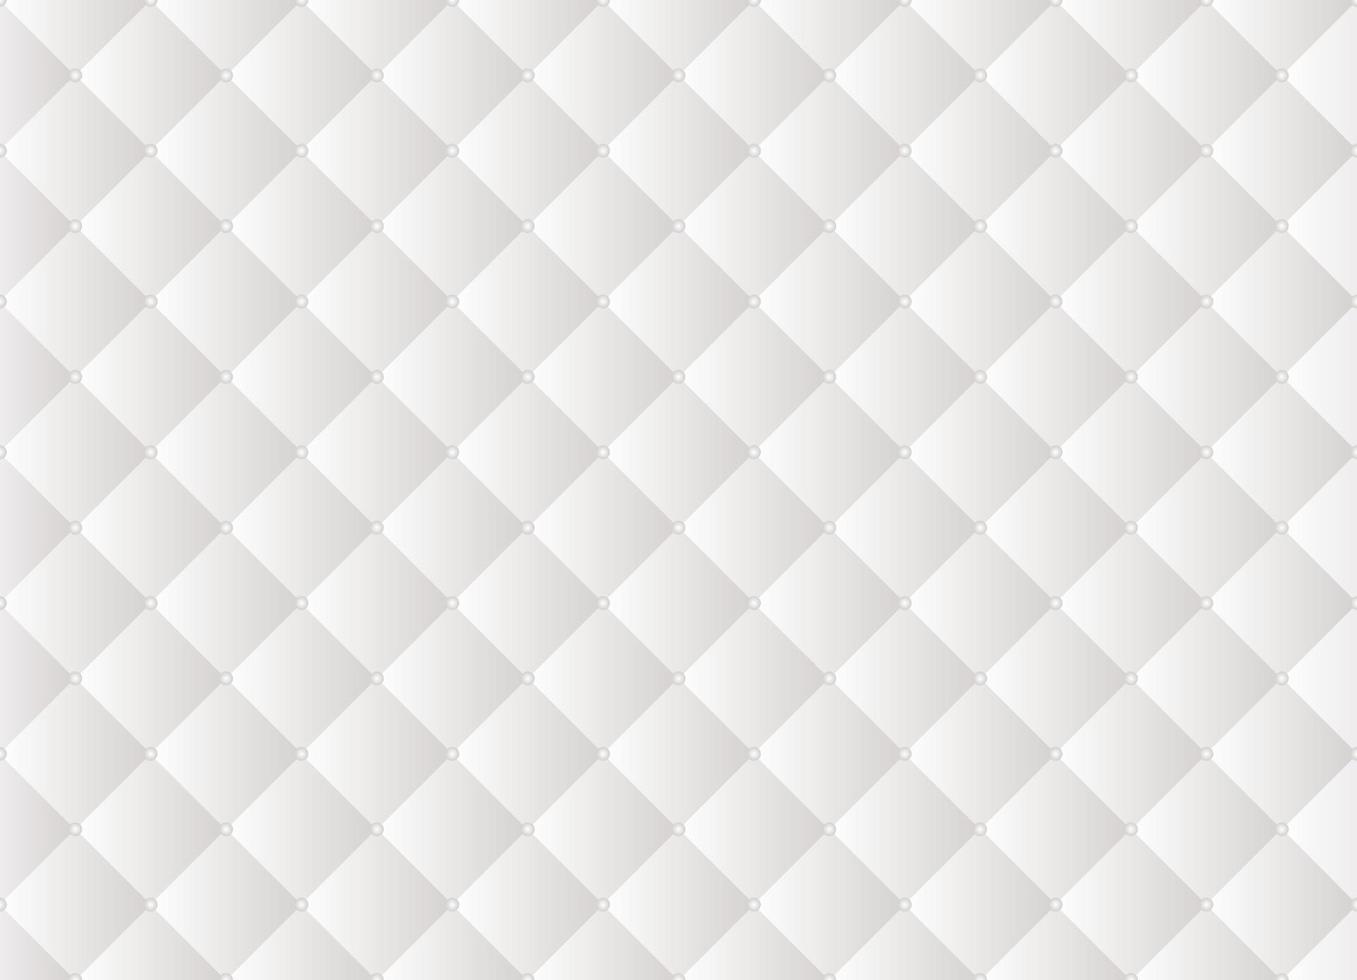 Weiß gepolstert Decke Platz mit Perlen nahtlos Muster. Polster Leder Textur Vektor Hintergrund.